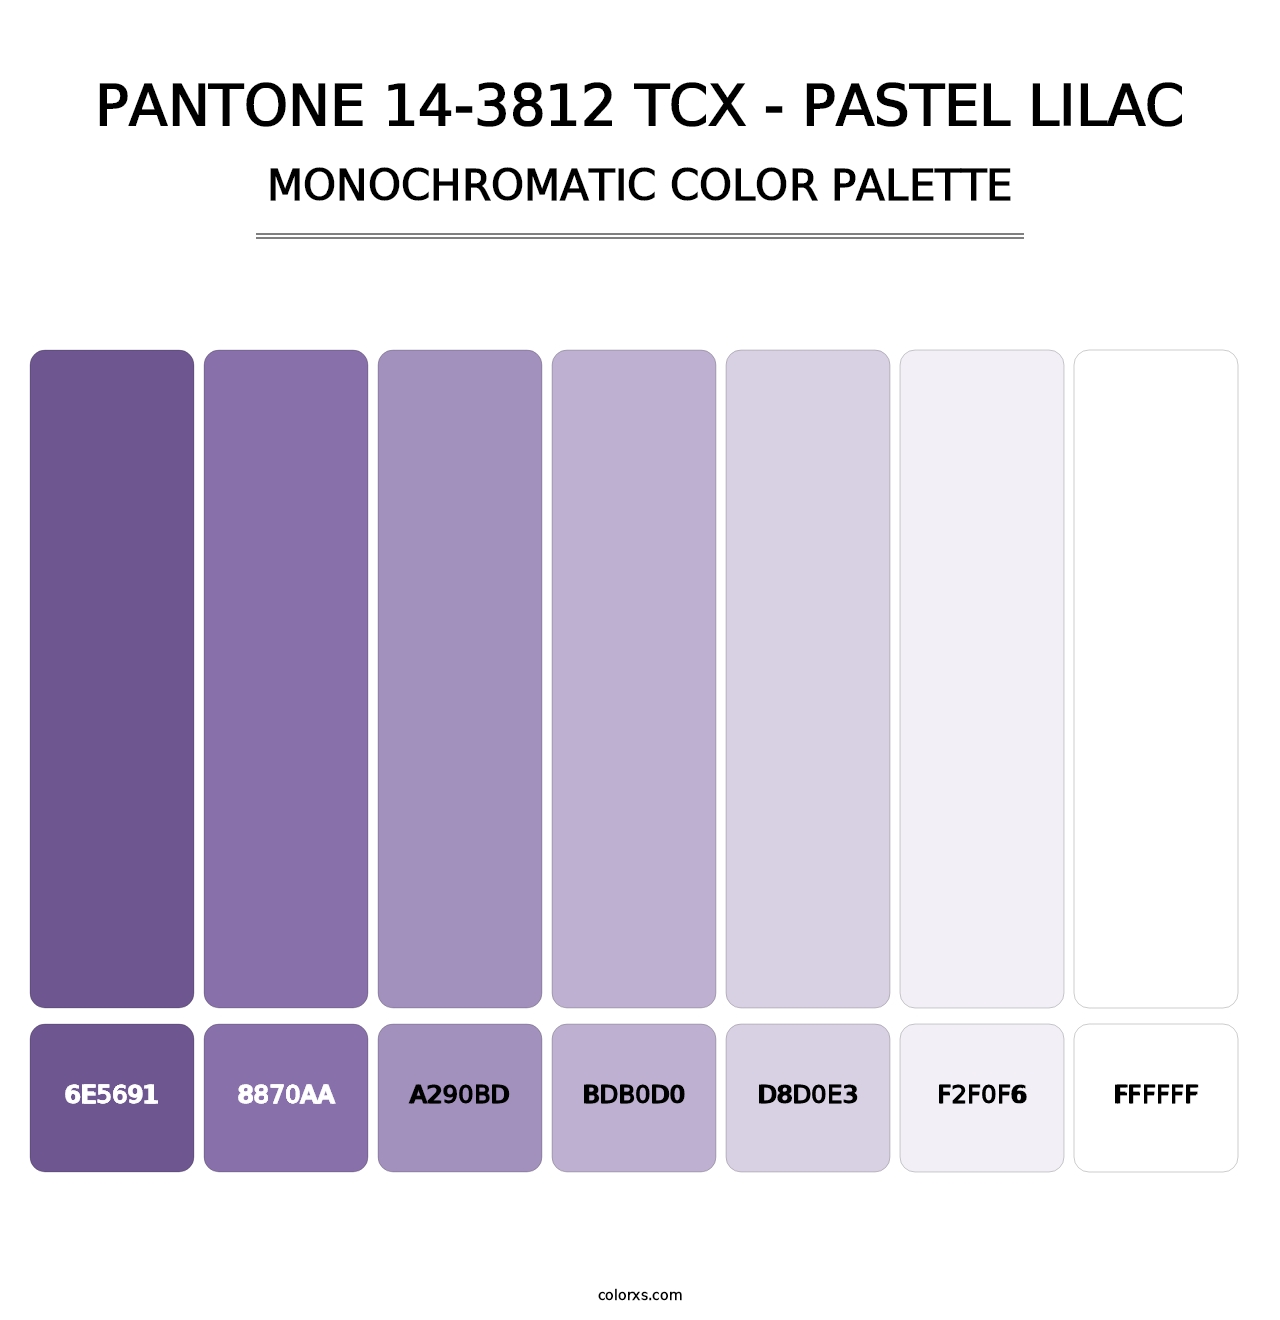 PANTONE 14-3812 TCX - Pastel Lilac - Monochromatic Color Palette